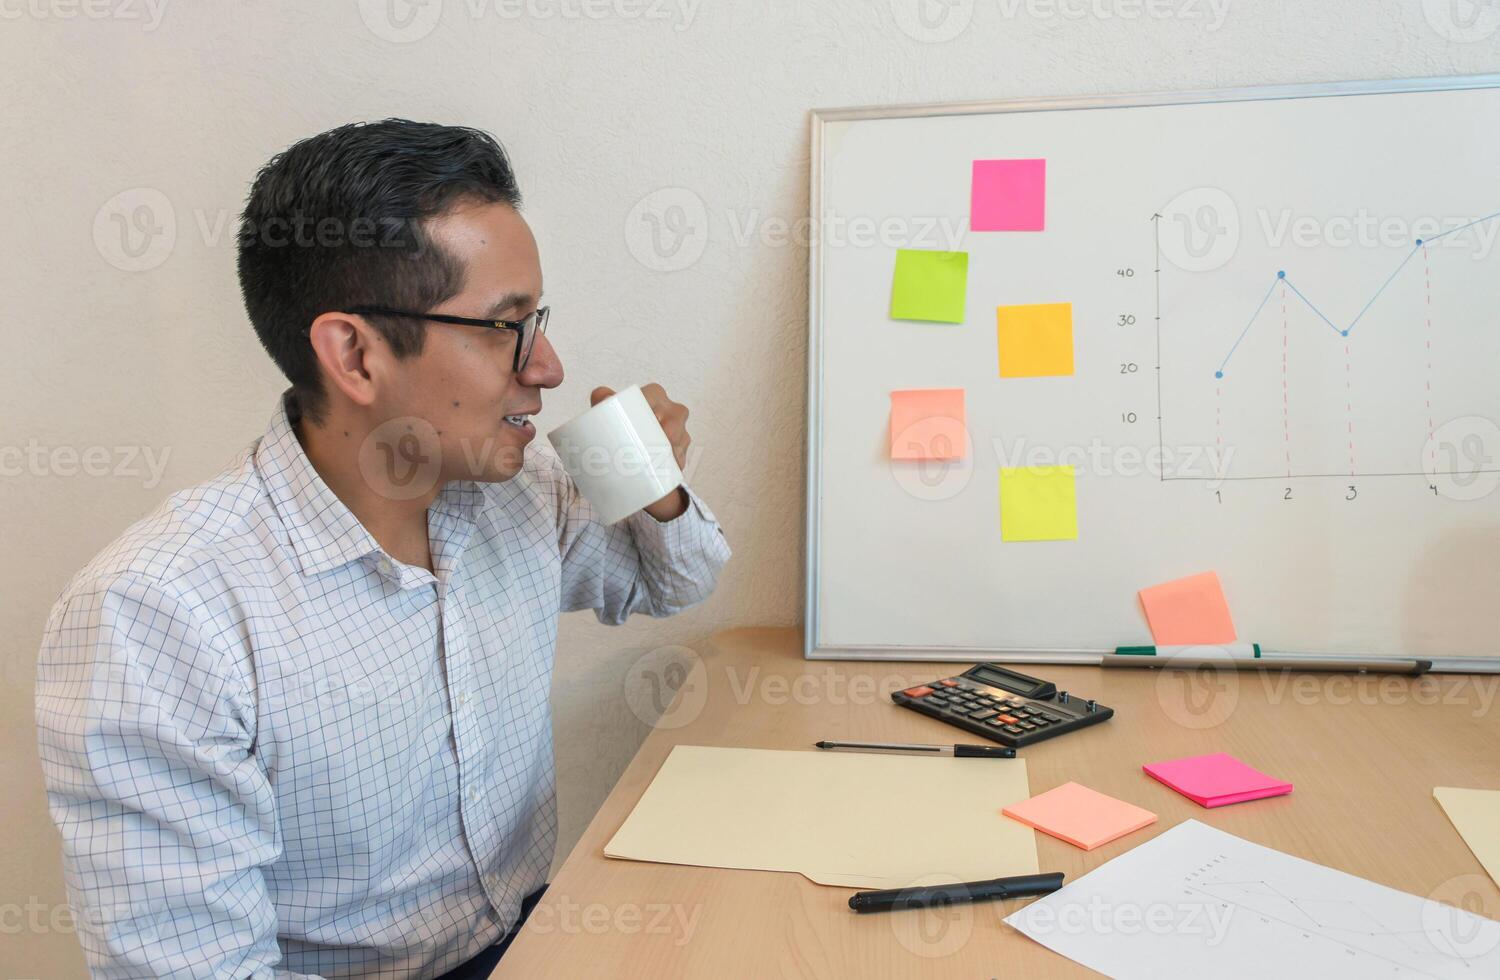 une homme séance à une bureau en buvant de une blanc agresser photo